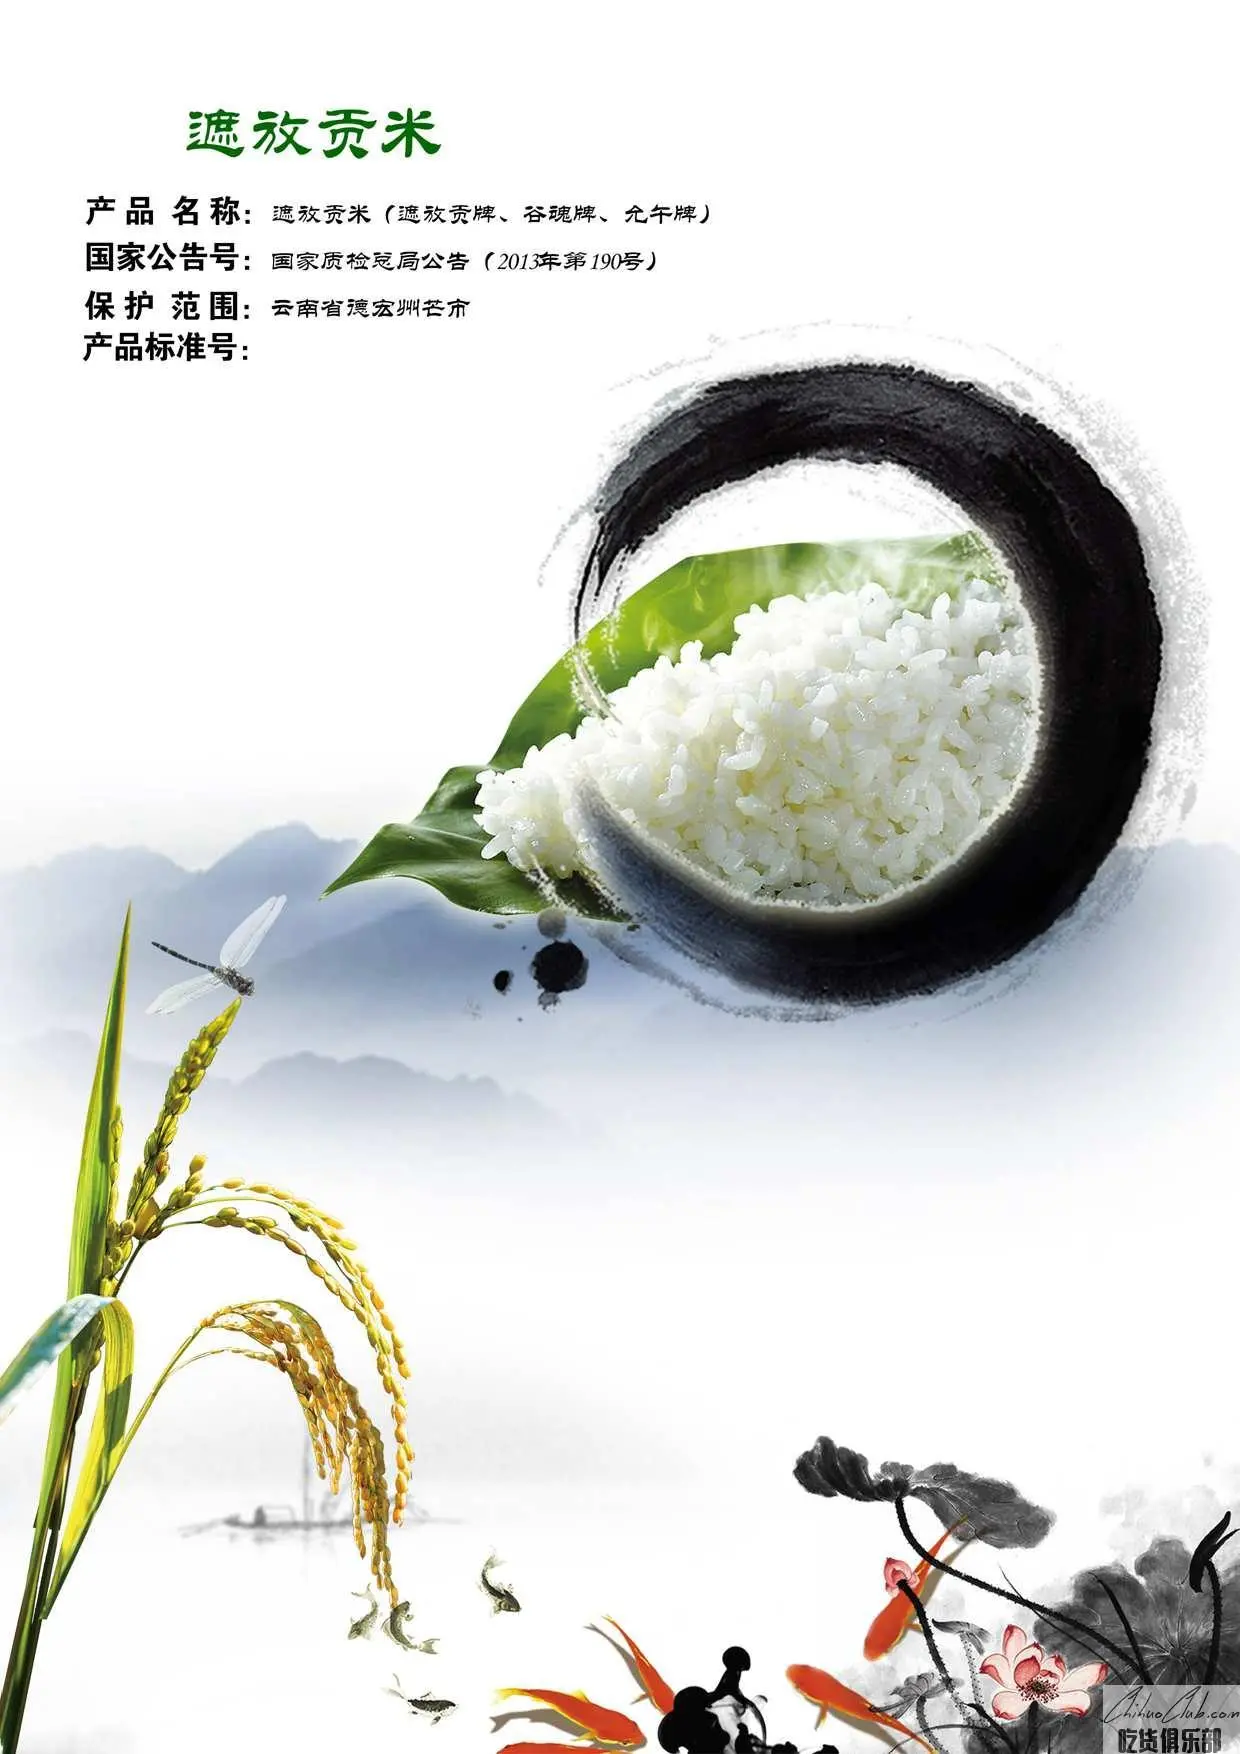 Zhefang Tribute Rice